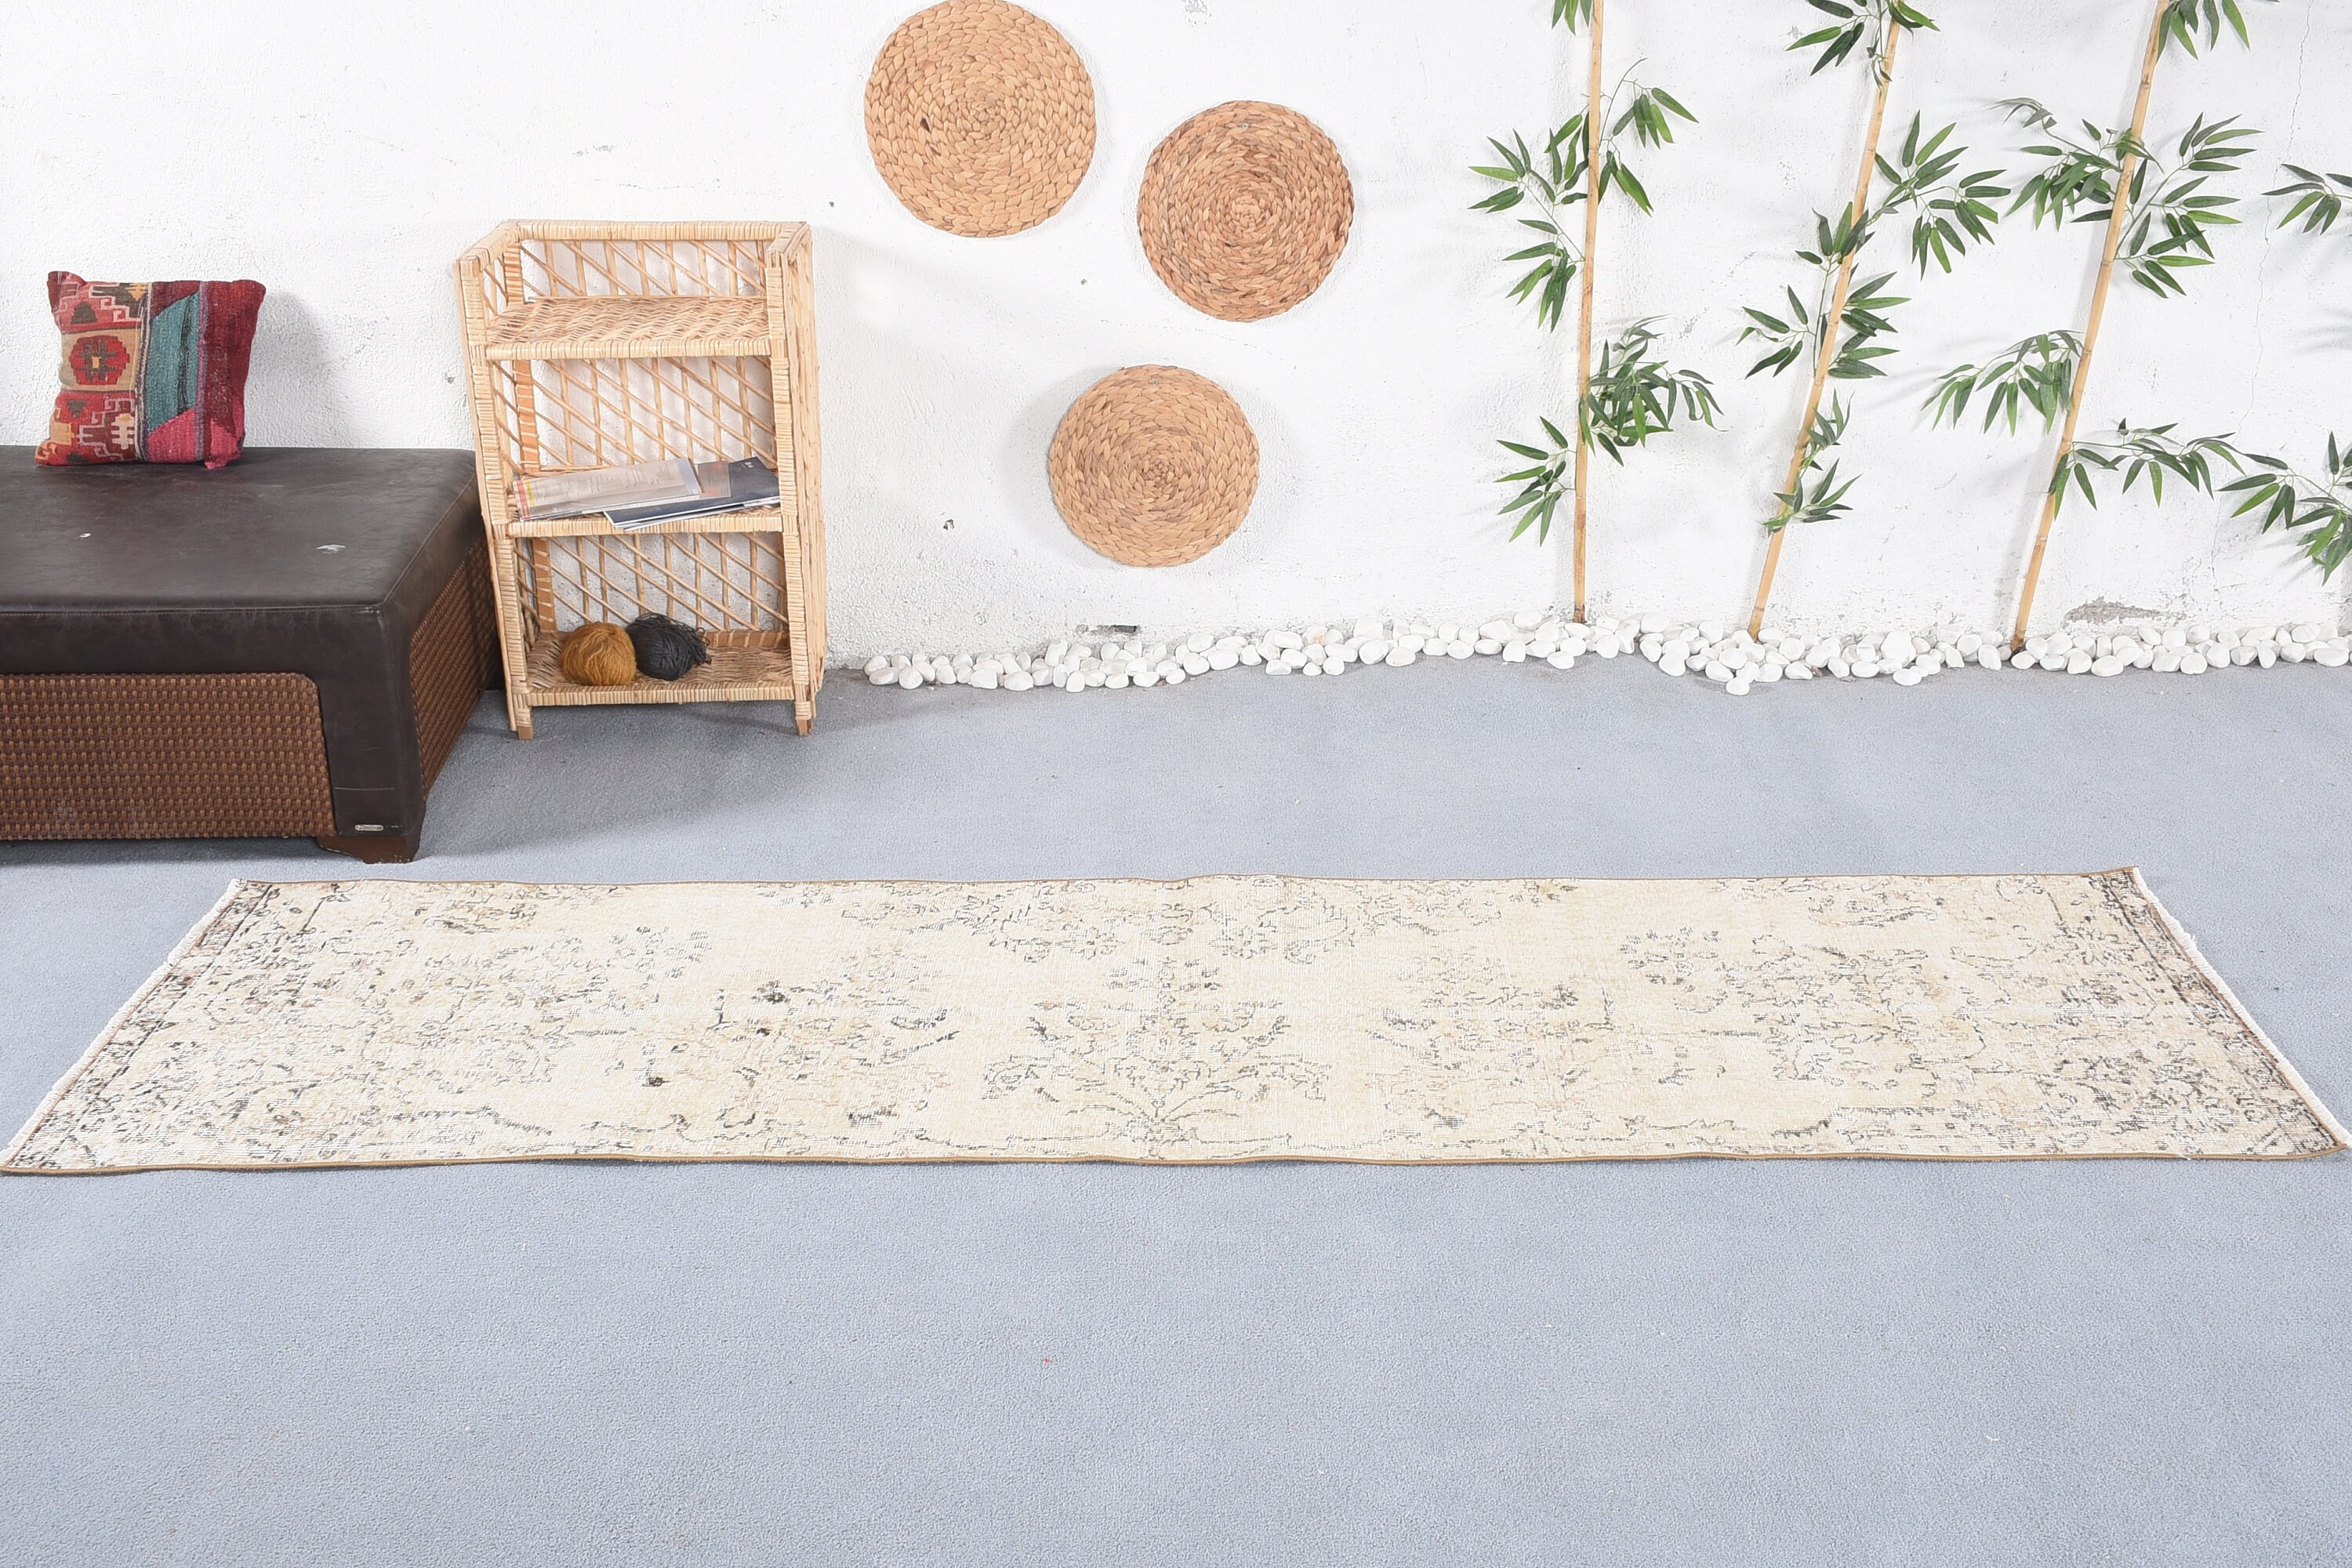 2.6x9 ft Runner Rug, Antique Rug, Floor Rug, Turkish Rugs, Rugs for Corridor, Hallway Rug, Kitchen Rug, Vintage Rugs, Beige Wool Rug